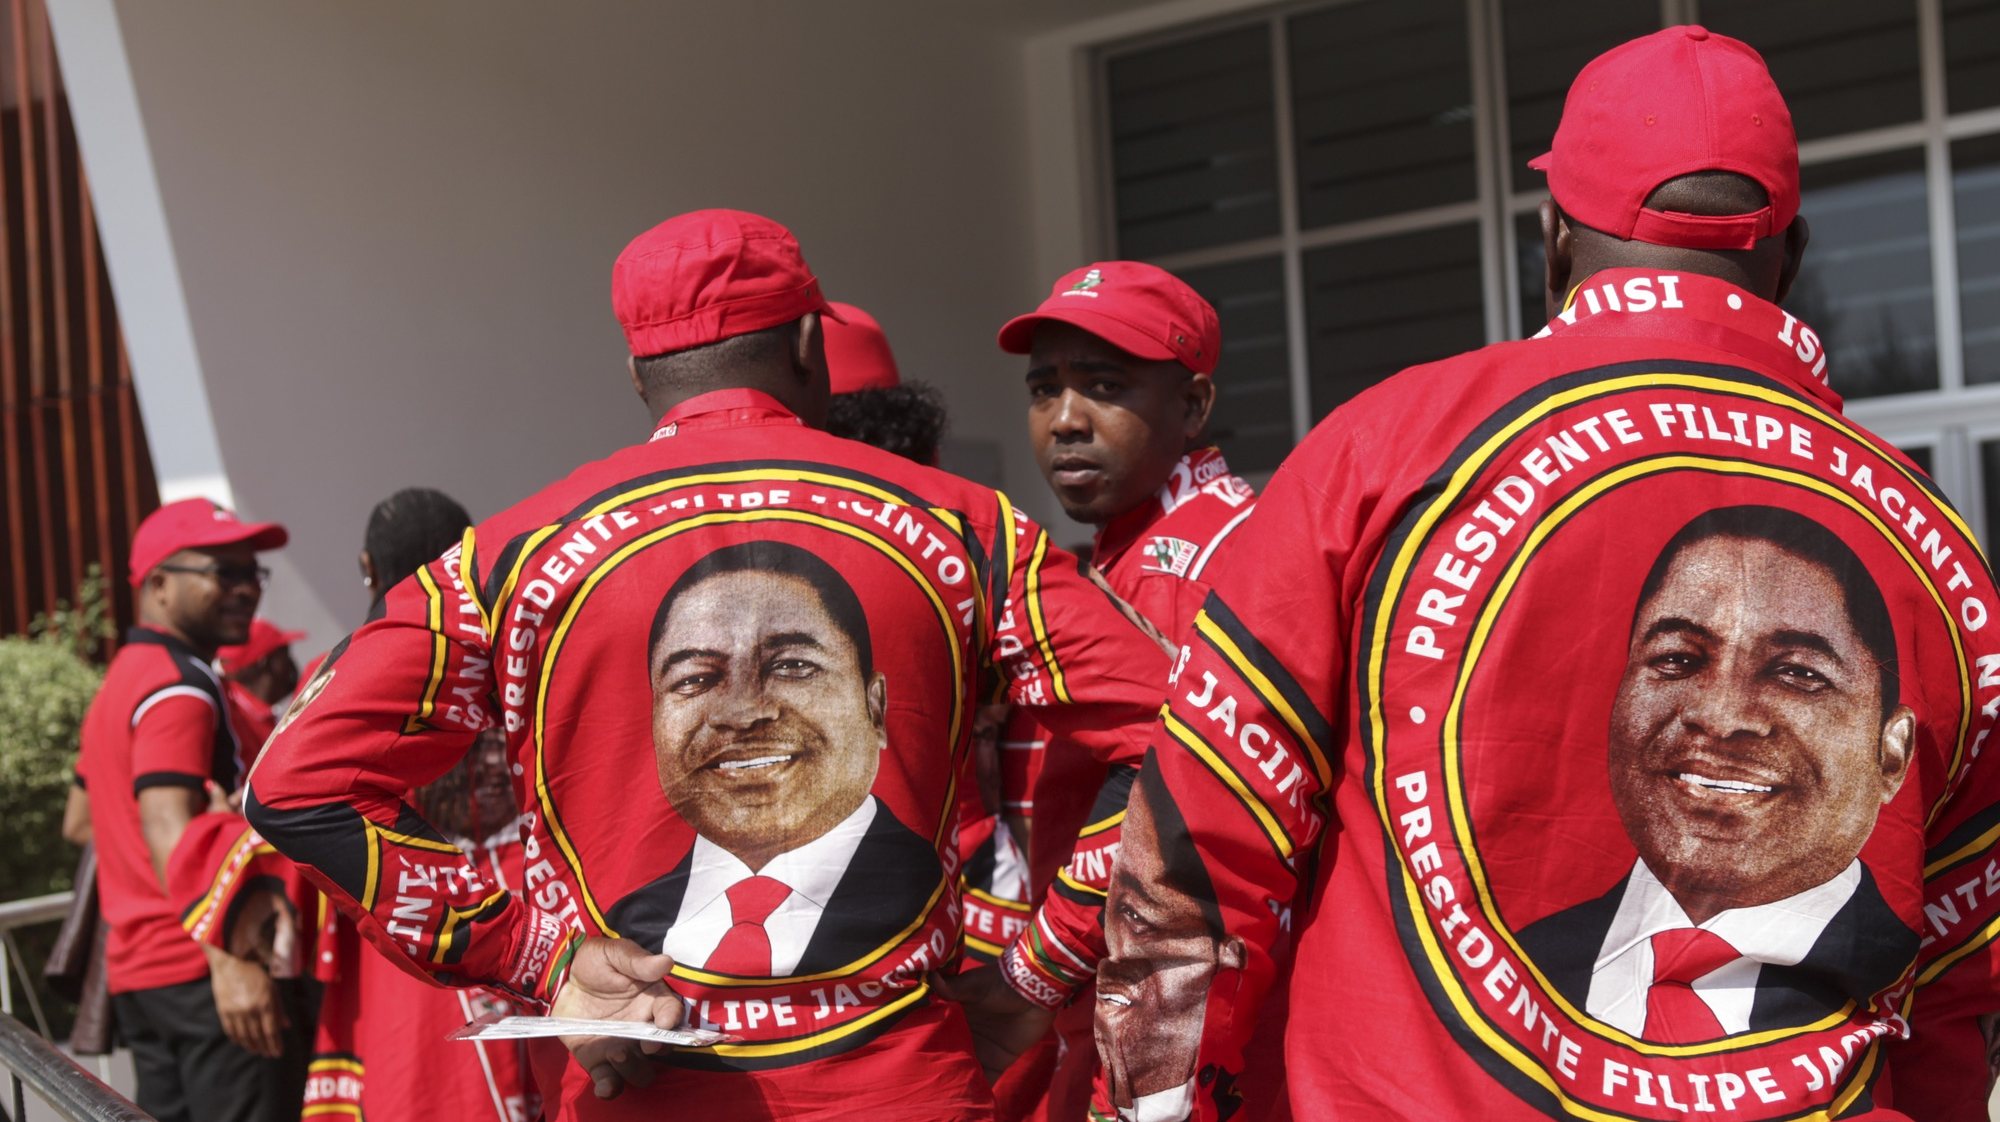 Militantes da Frente de Libertação de Moçambique (Frelimo) à chegada ao 12.º Congresso da Frelimo, em Maputo, Moçambique, 23 de setembro de 2022. A Frelimo, partido no poder em Moçambique, reúne-se a partir de hoje e até quarta-feira para o seu 12.º Congresso, o encontro magno da força política, em que o atual líder, Filipe Nyusi, é o único candidato anunciado à presidência. LUÍSA NHANTUMBO/LUSA